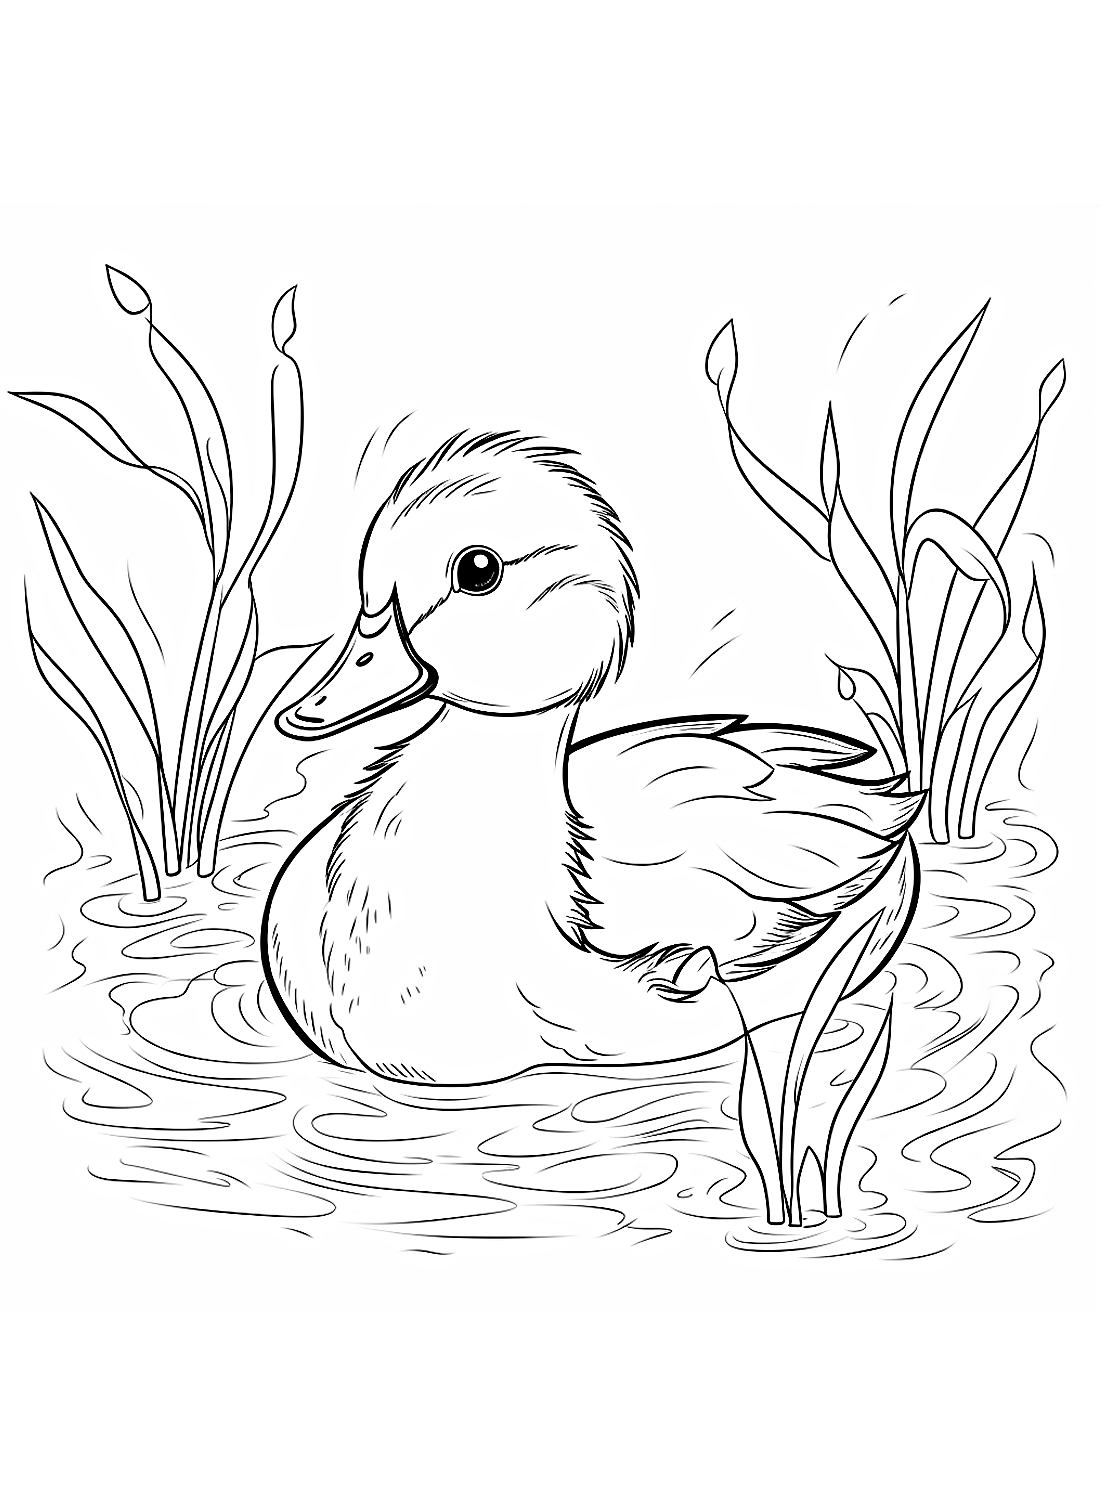 《小鸭》中的一只游泳的小鸭